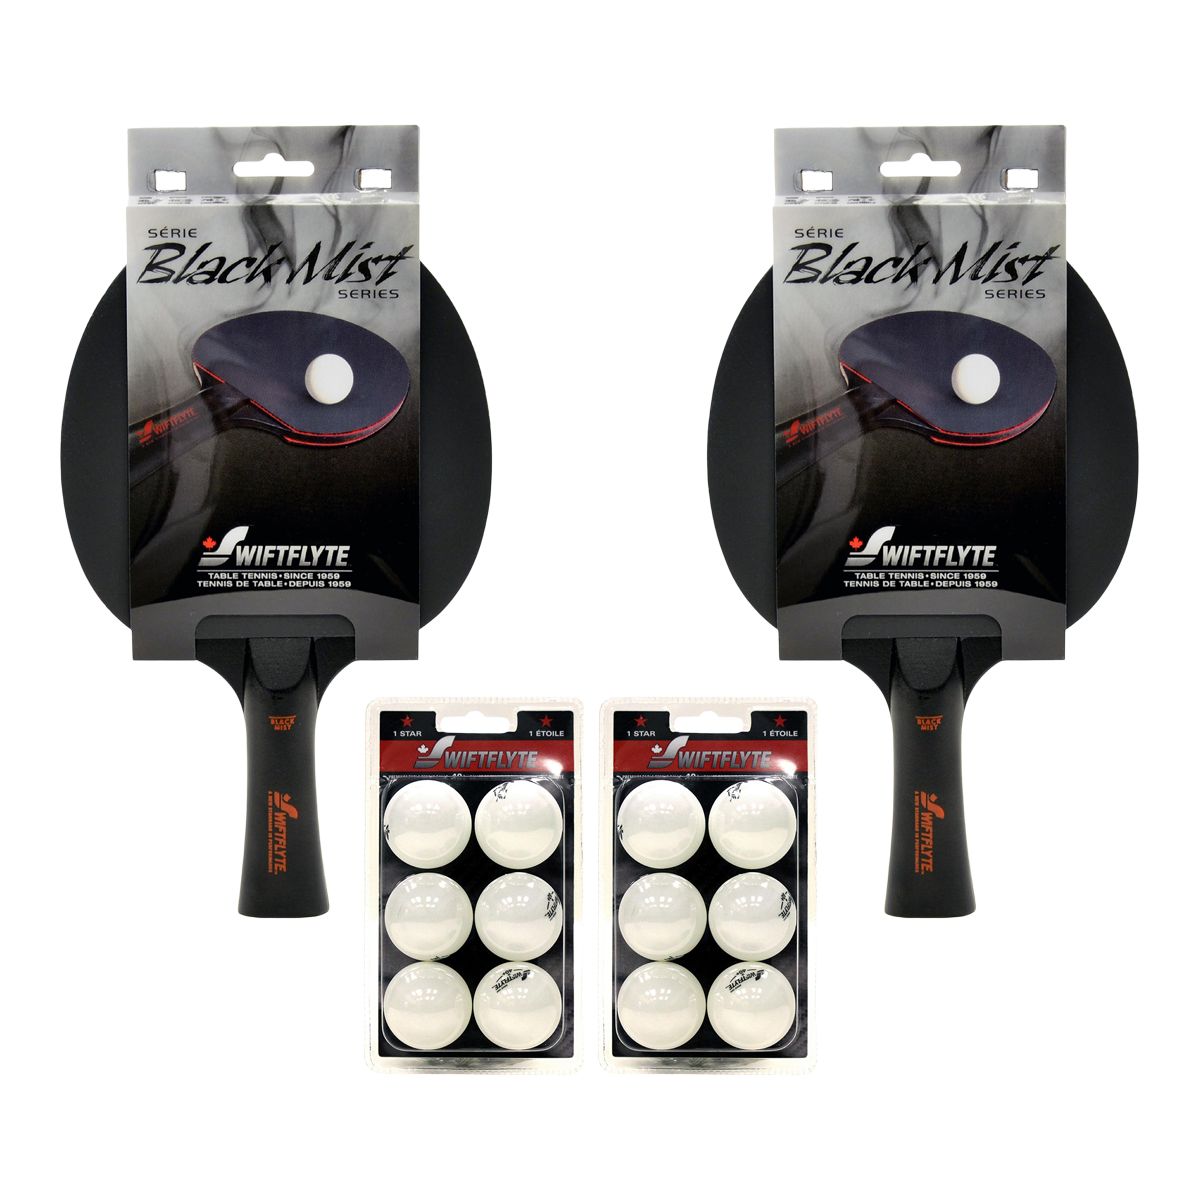 Swiftflyte Black Mist Table Tennis Racket Set